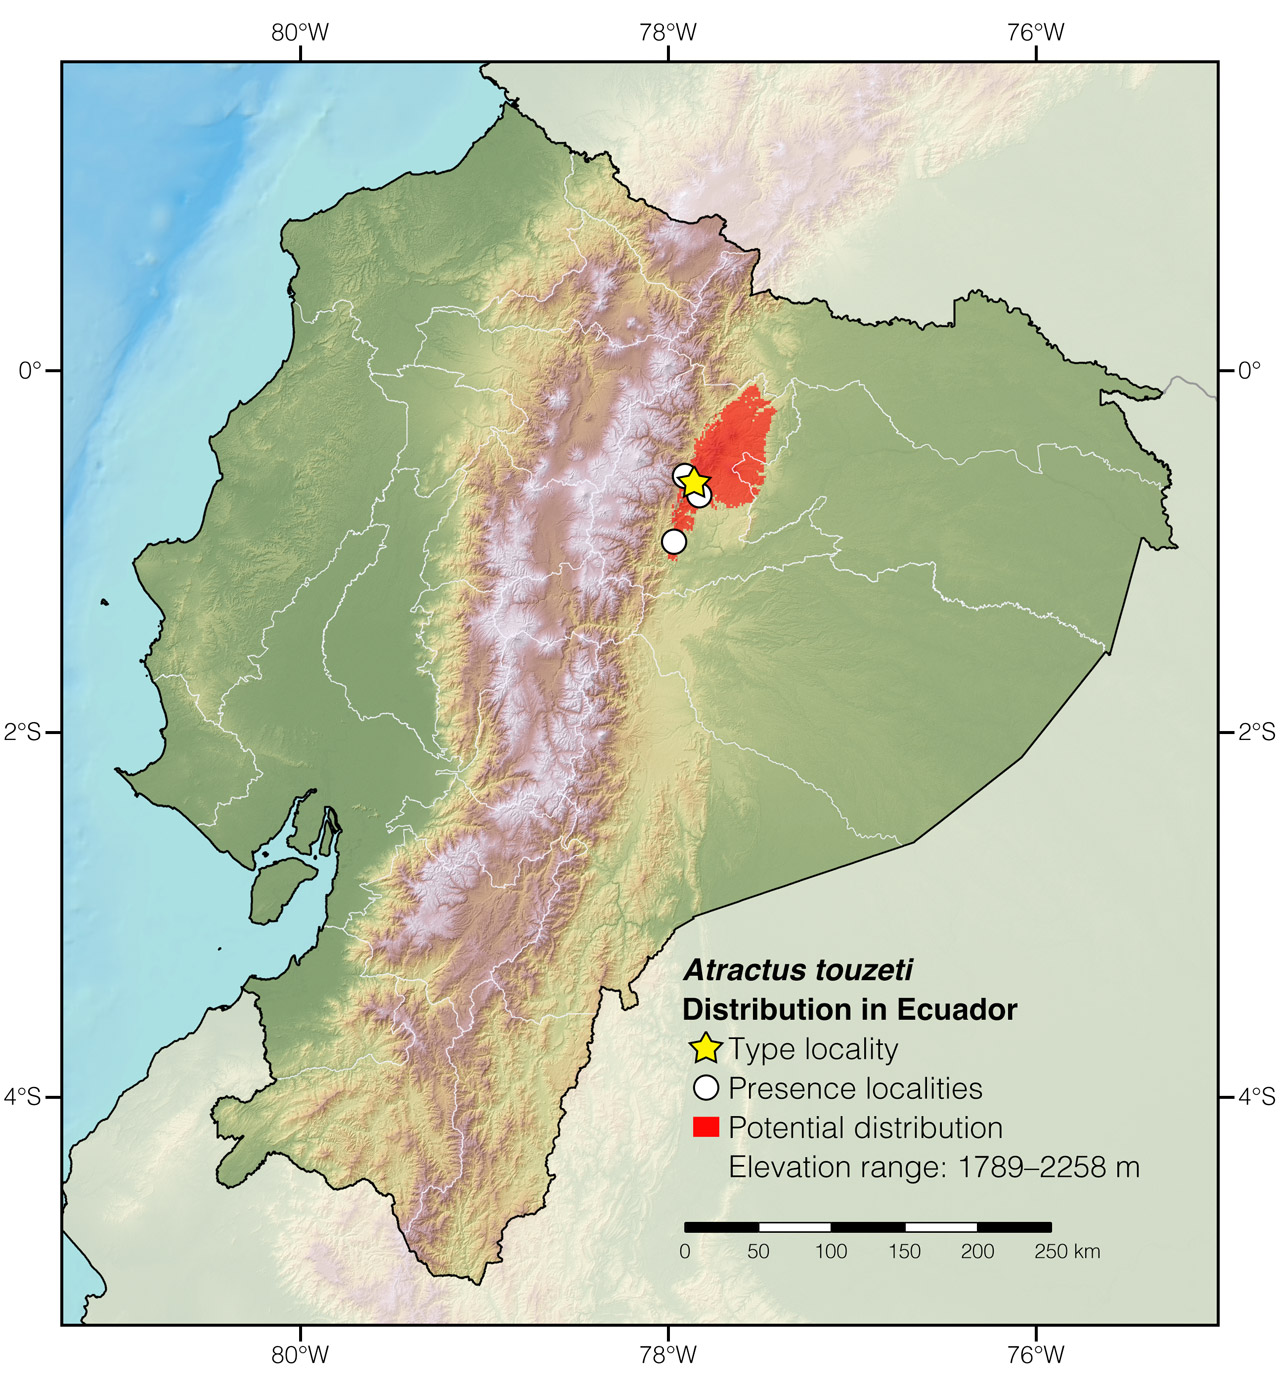 Distribution of Atractus touzeti in Ecuador